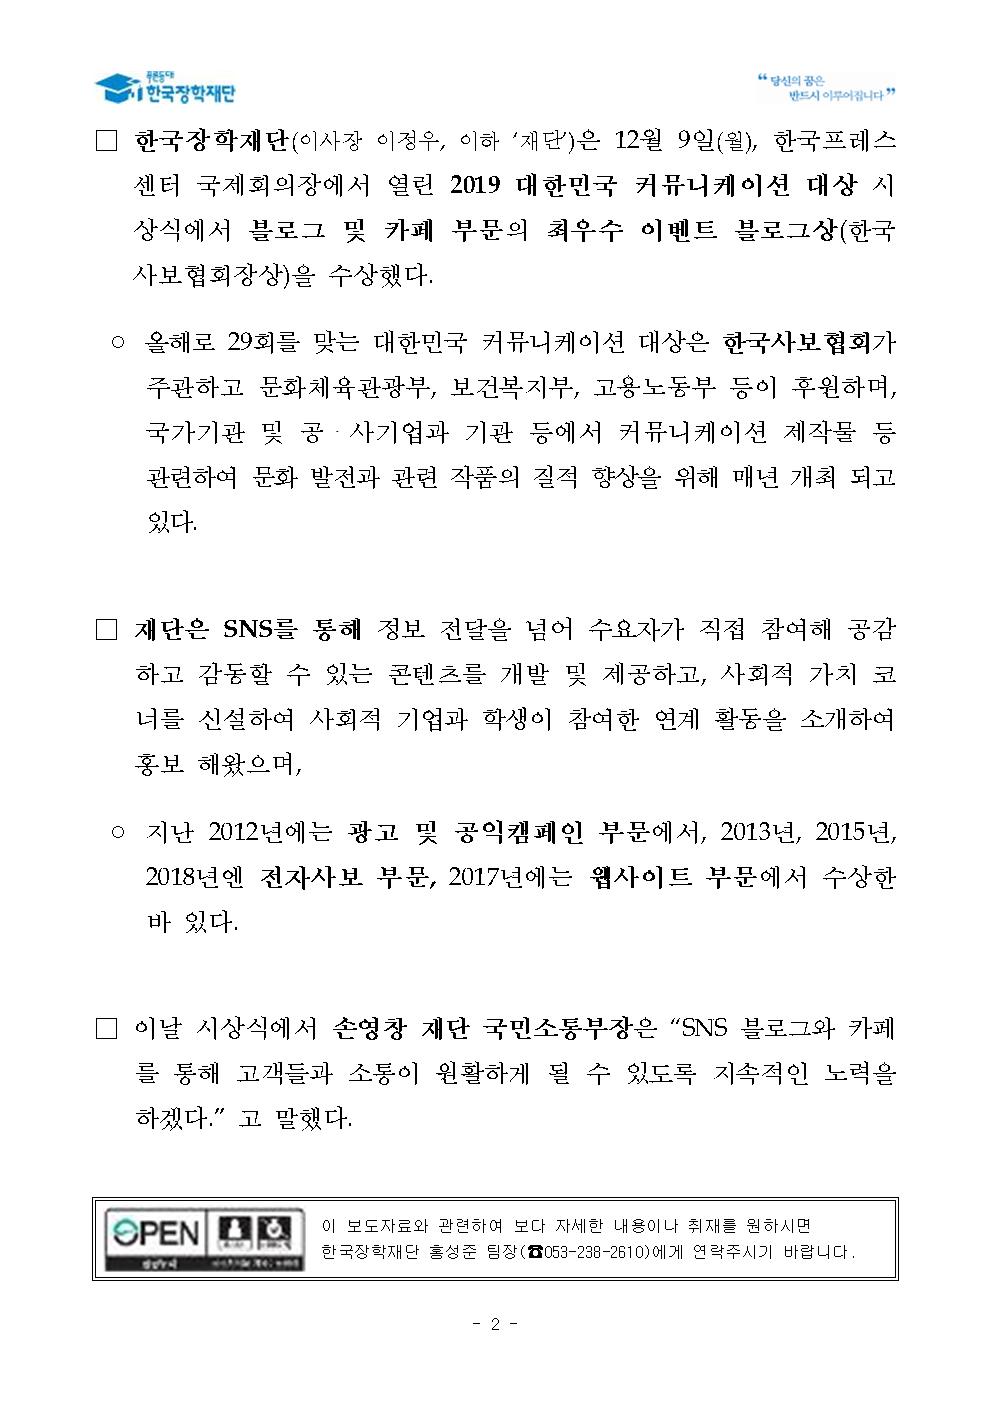 12-10(화)[보도자료] 한국장학재단, 2019 대한민국 커뮤니케이션 대상 수상002.jpg